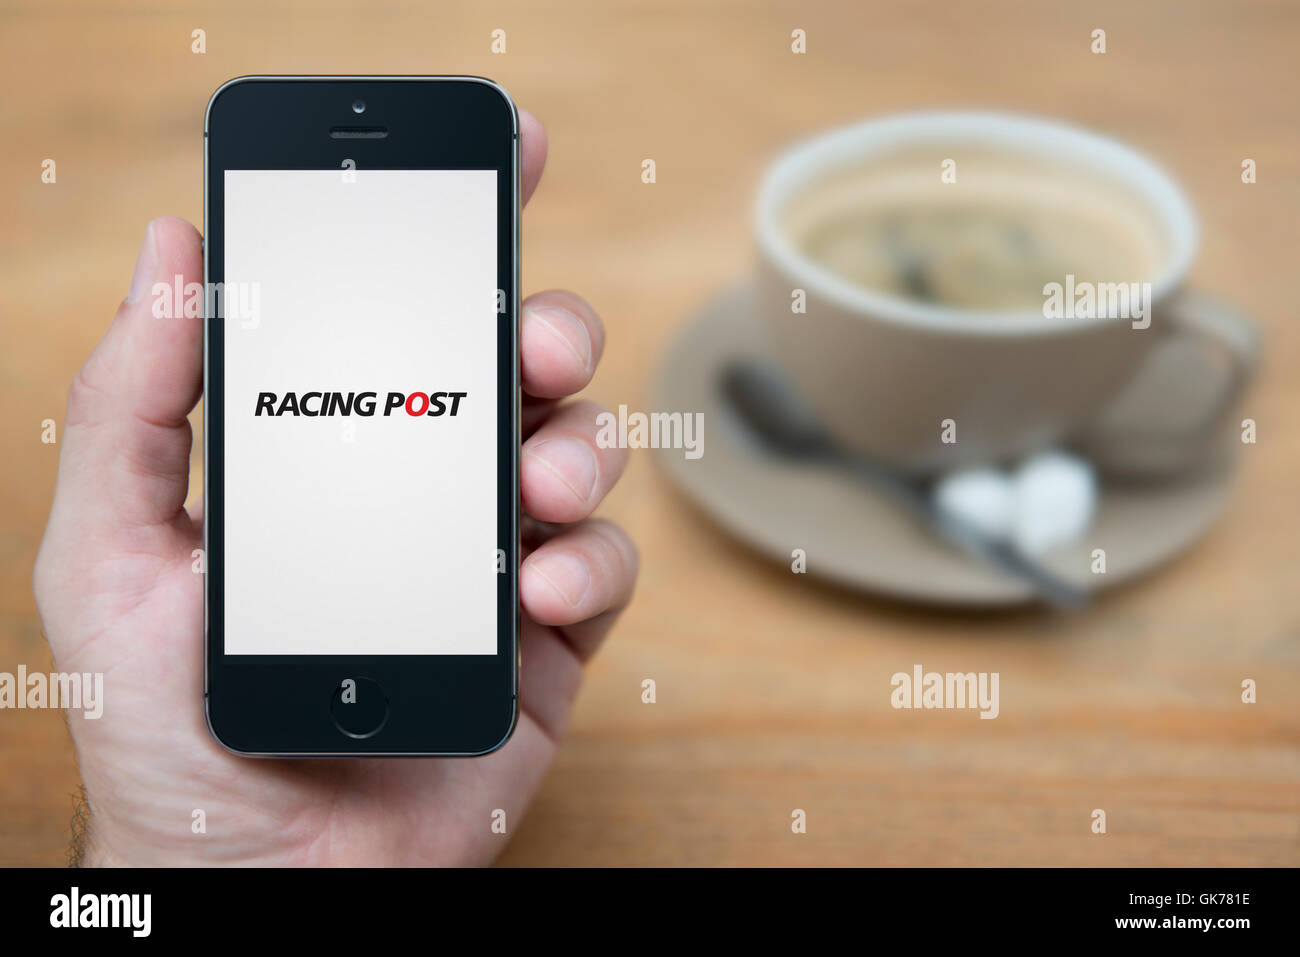 Un homme se penche sur son iPhone qui affiche le logo Post Course, alors qu'assis avec une tasse de café (usage éditorial uniquement). Banque D'Images